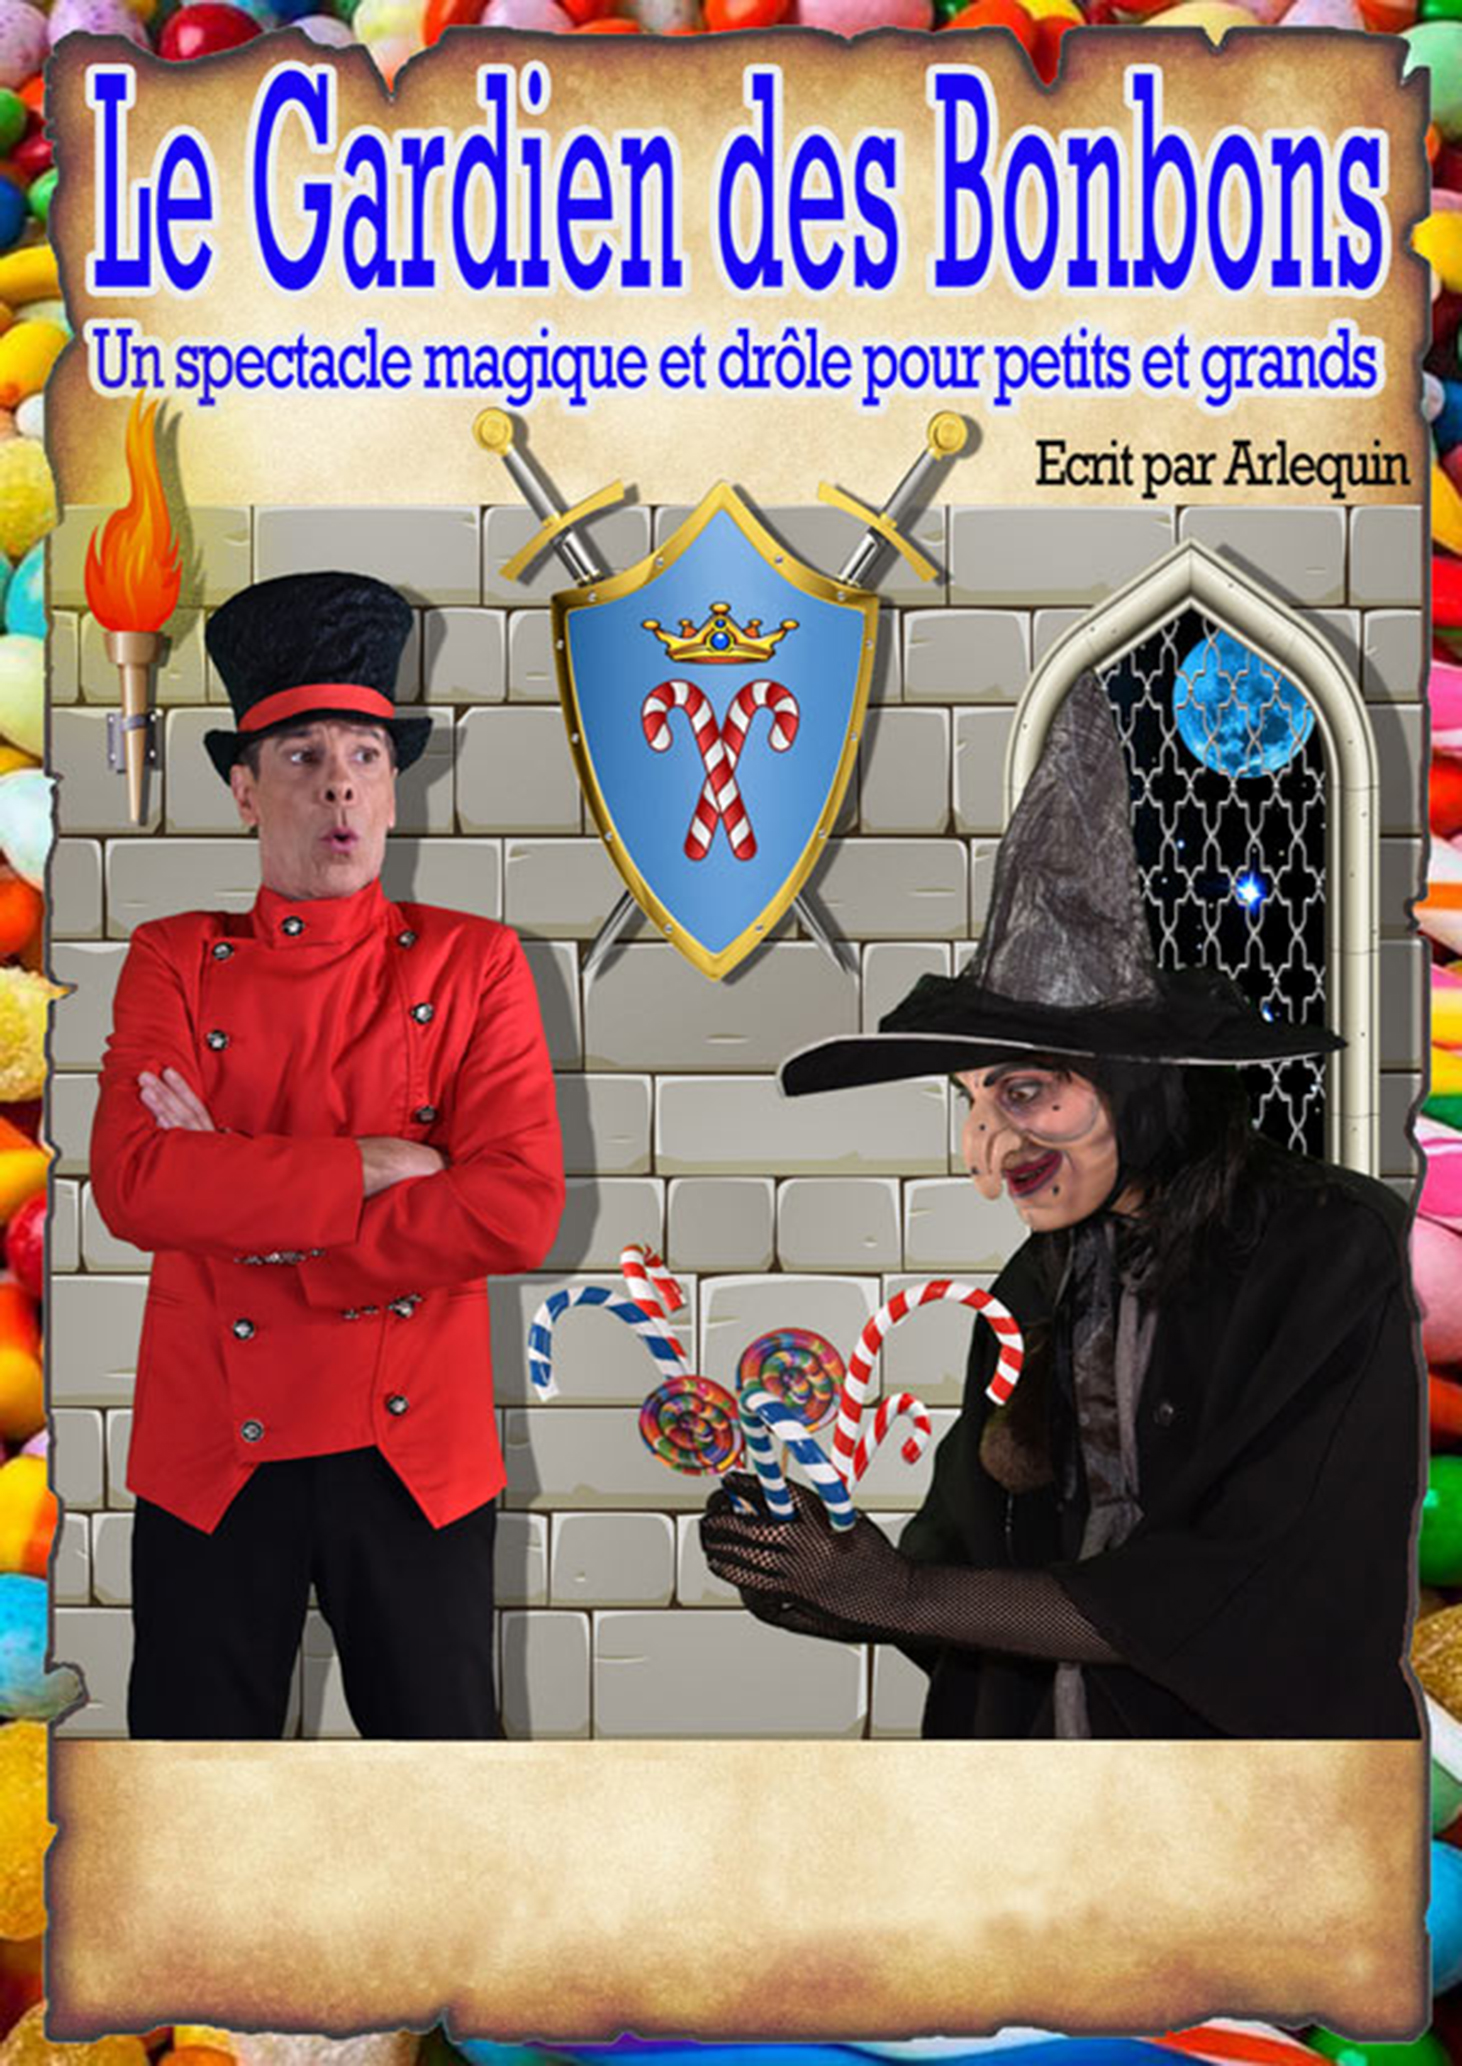 Le-Gardien-des-bonbons_271216G